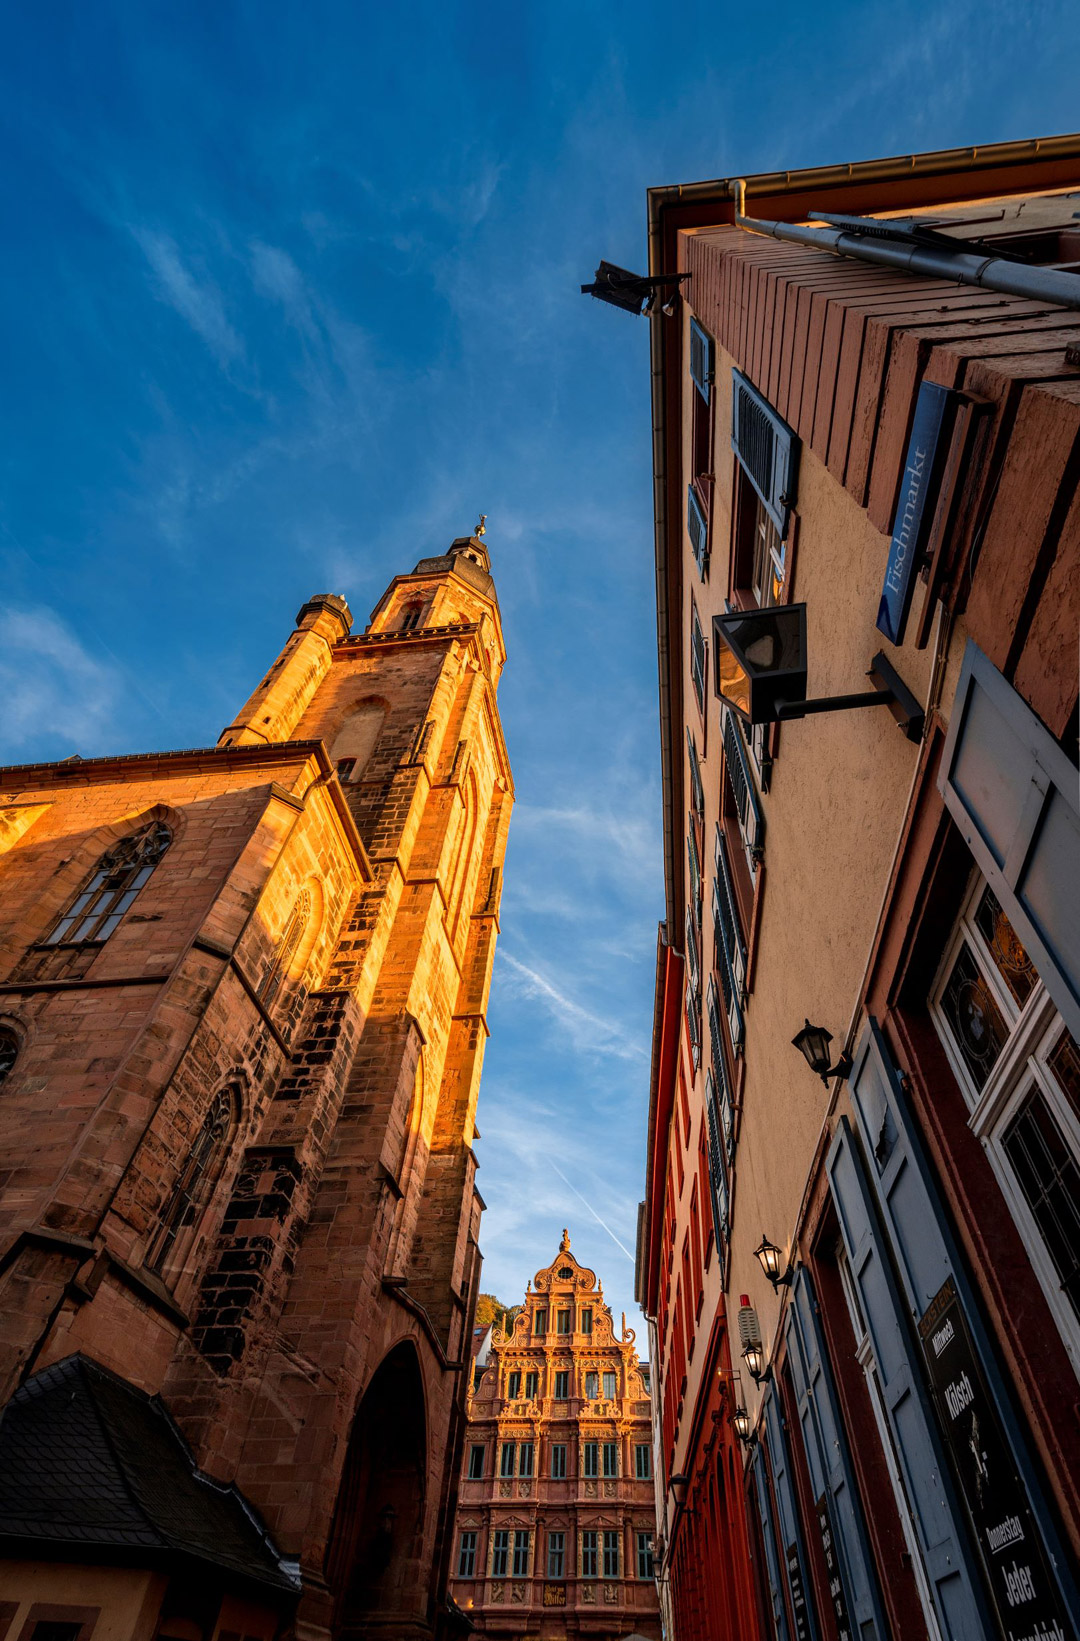 Heidelberger Altstadt